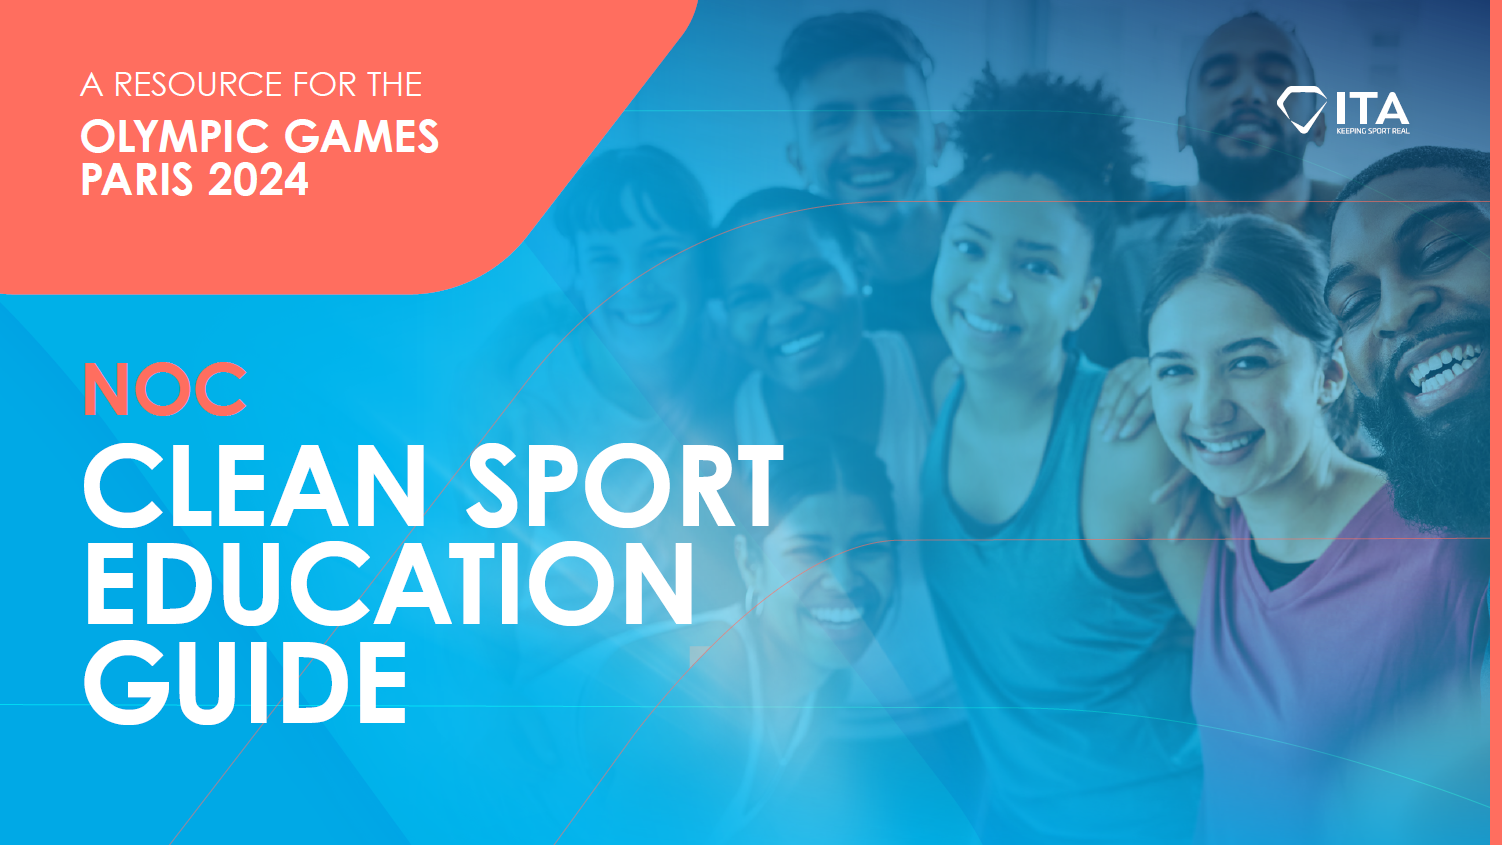 NOC Clean Sport Education Guide - Paris 2024